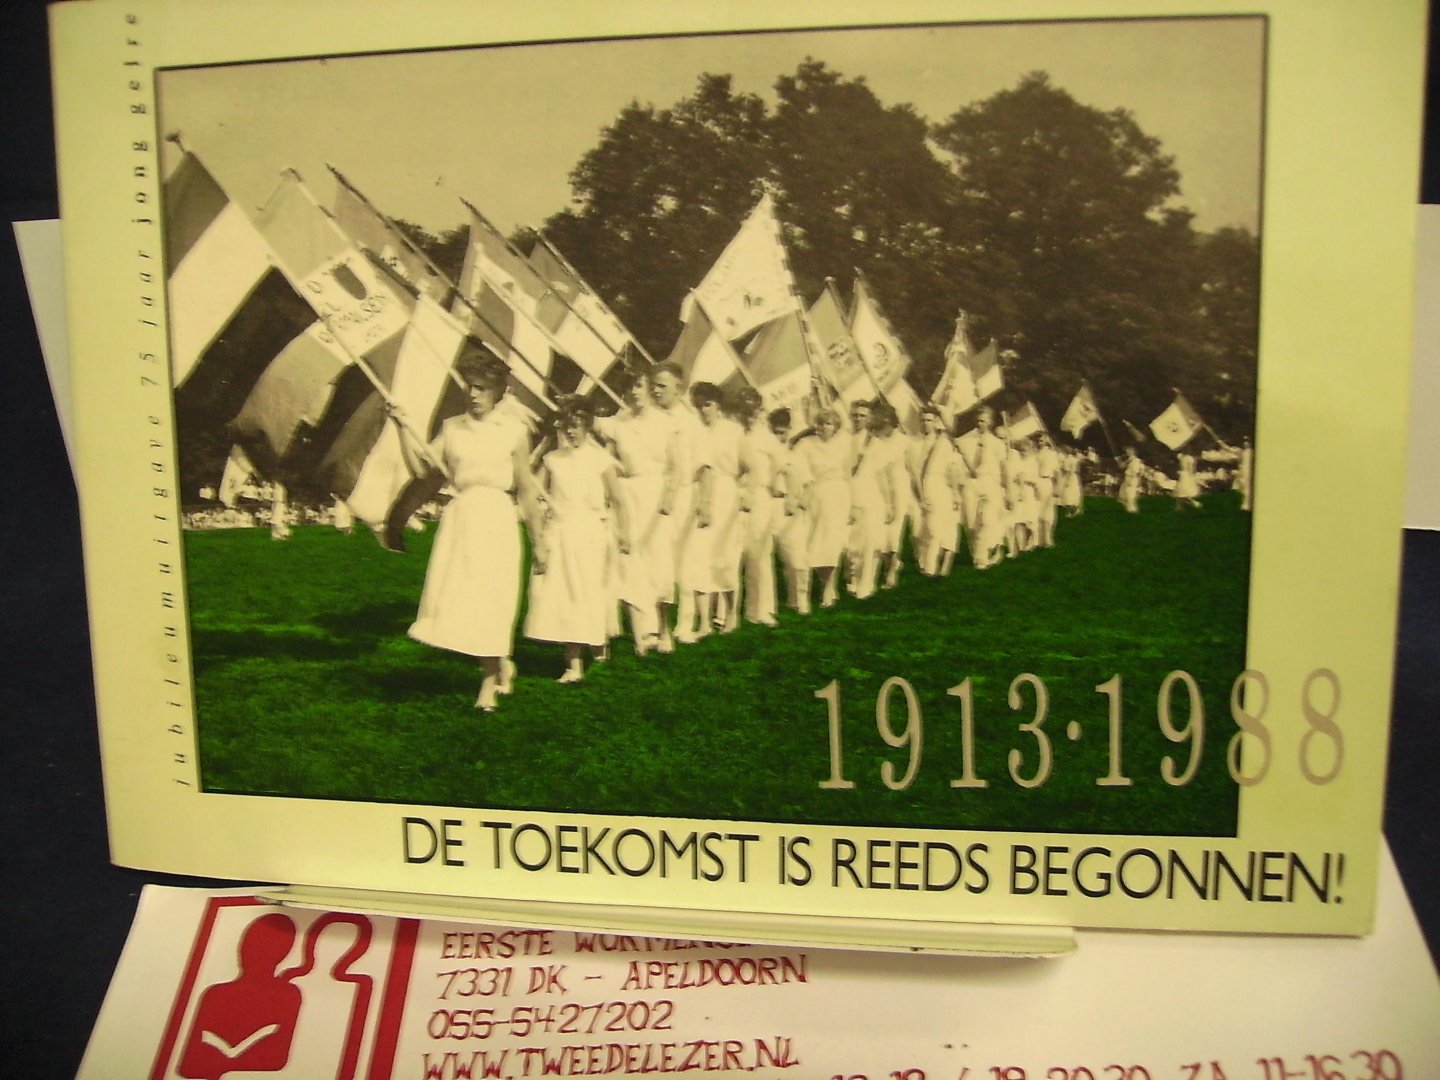 Guiking, Aribert, Huetink,Willem - De toekomst is reeds begonnen ! 1913-1988